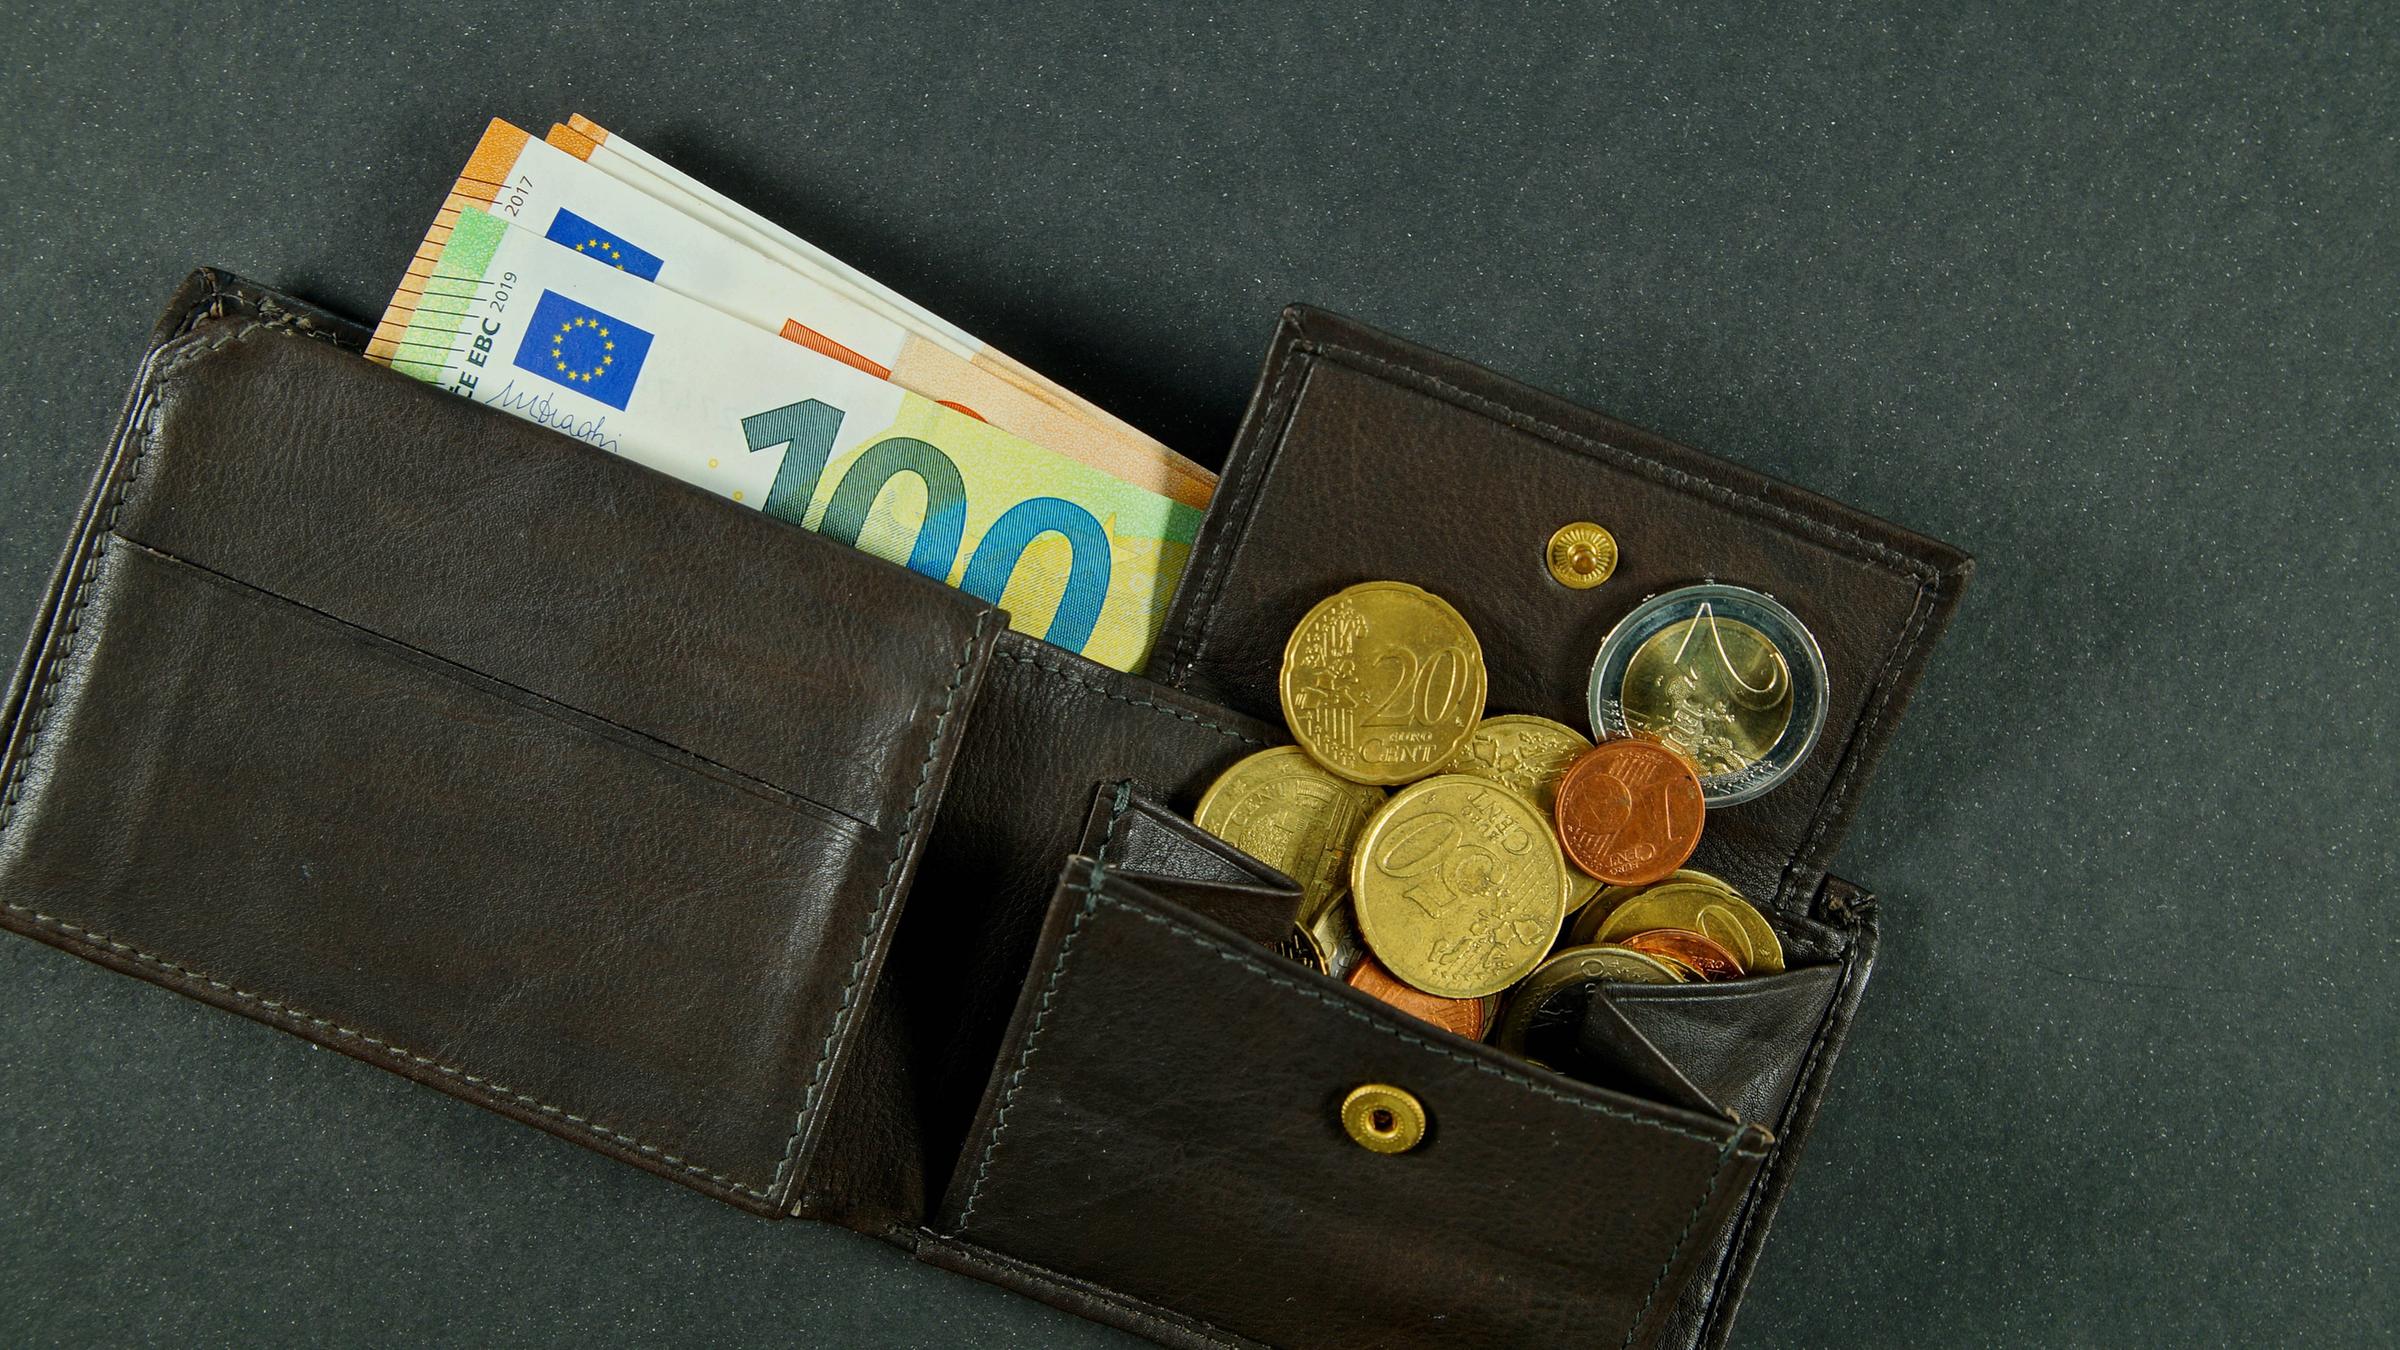 Eine dunkle, geöffnete Ledergeldbörse. Einige Euroscheine sind herausgezogen, Münzen sind aus dem geöffneten Münzfach gerutscht.